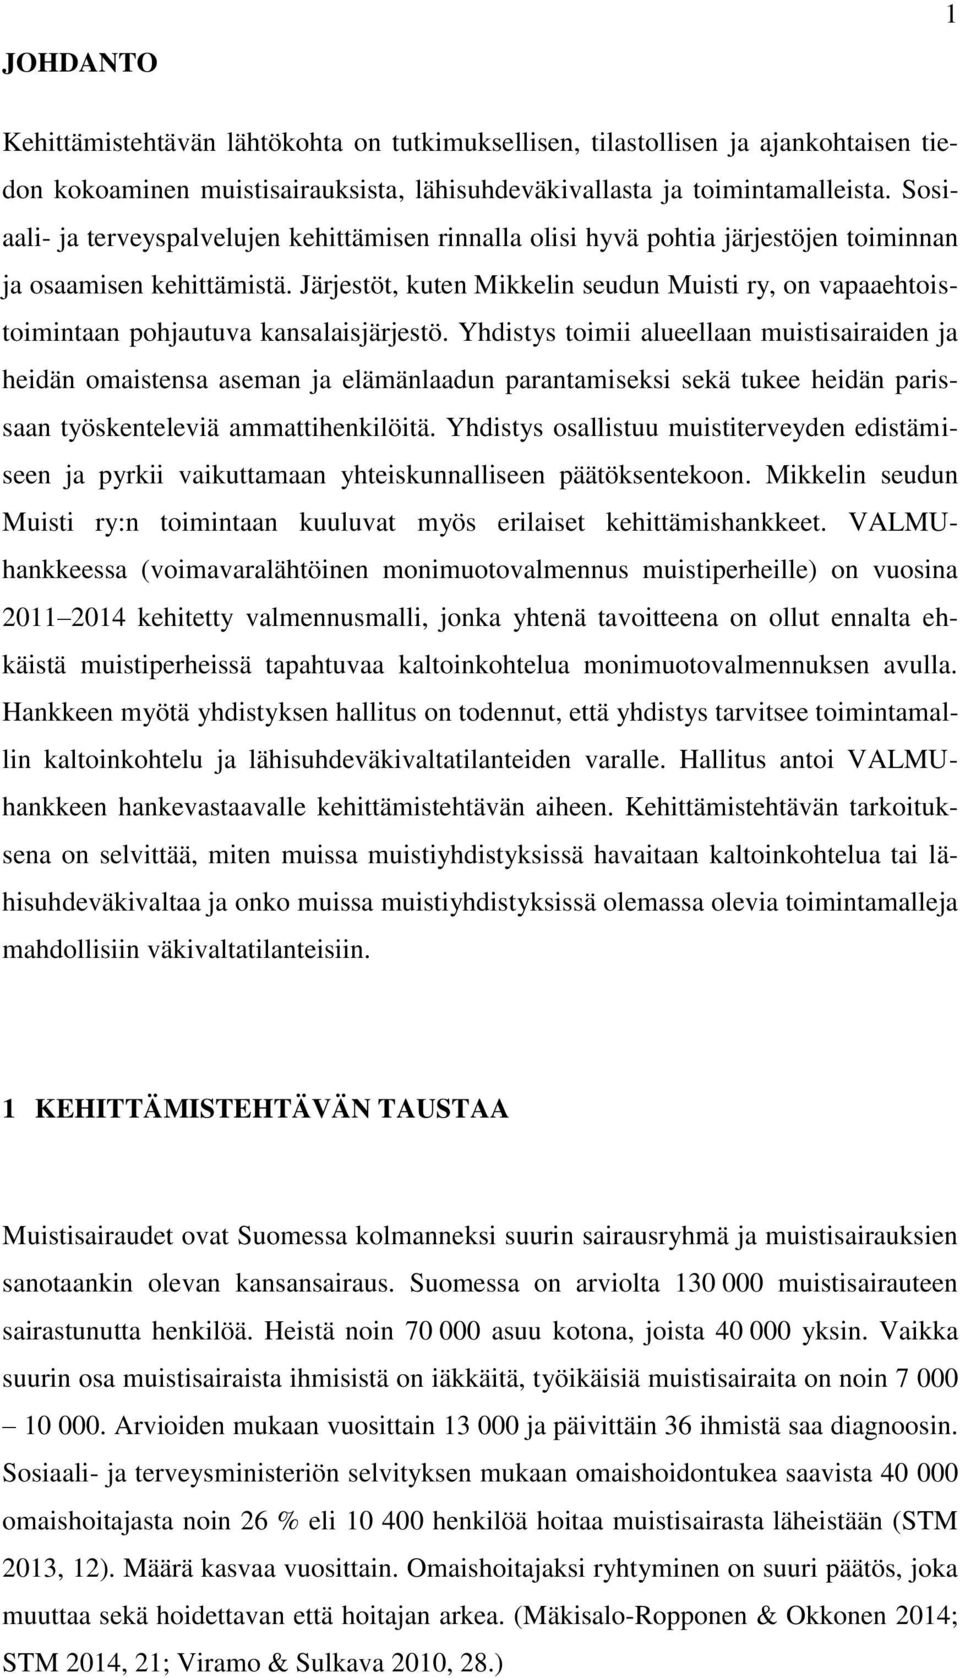 Järjestöt, kuten Mikkelin seudun Muisti ry, on vapaaehtoistoimintaan pohjautuva kansalaisjärjestö.